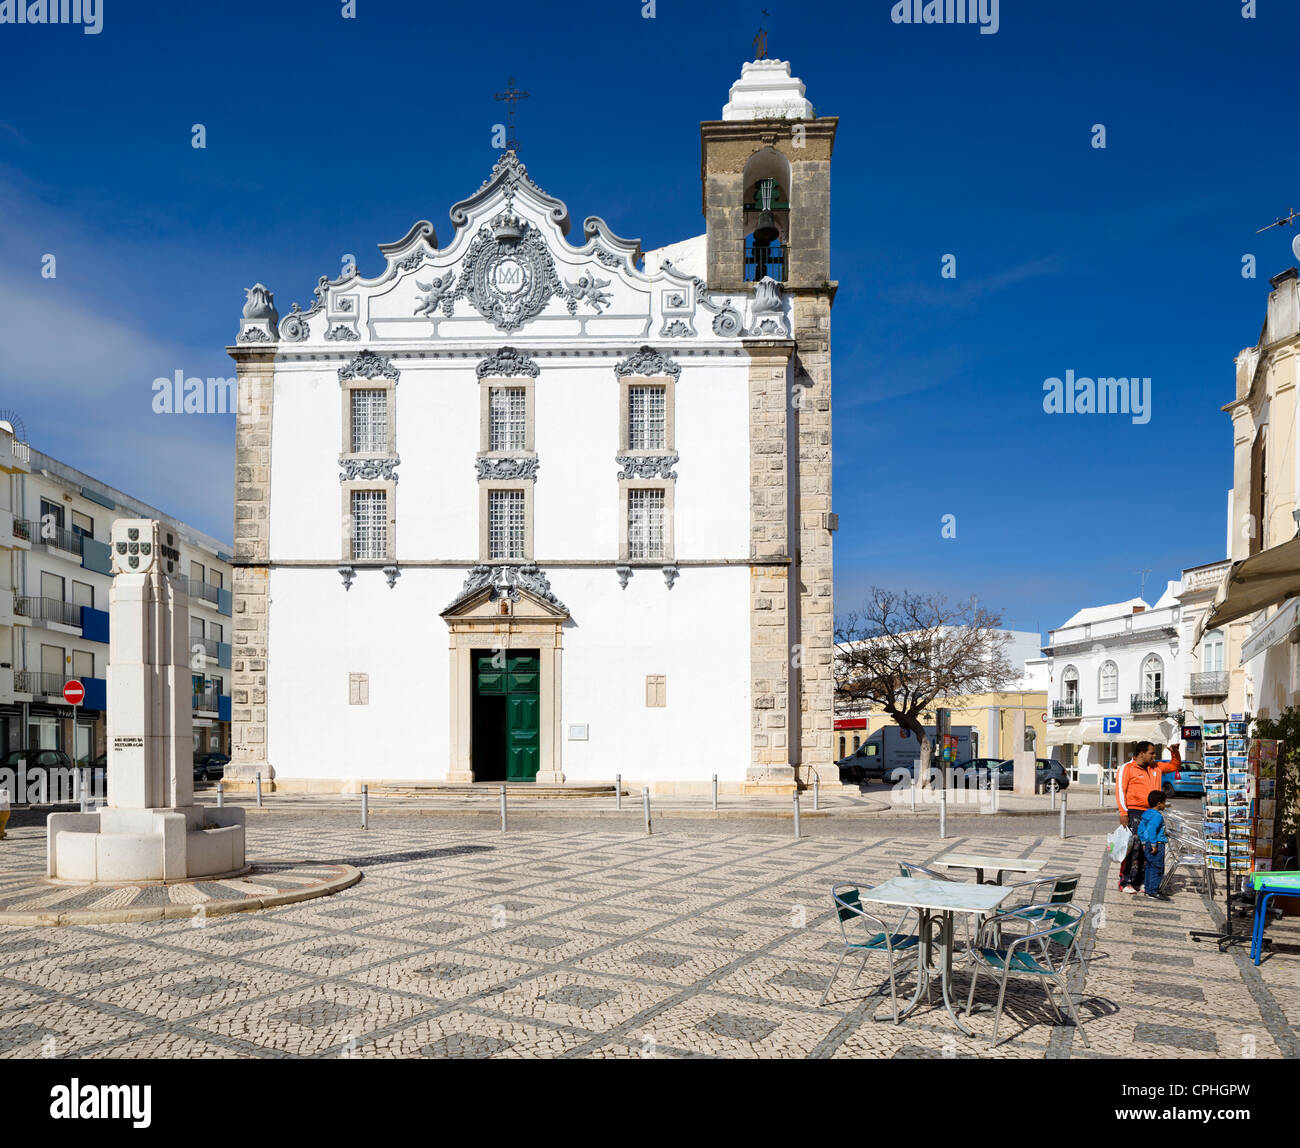 La iglesia de Nossa Senhora do Rosario, en la Praca da Restauracao en el viejo centro de la ciudad, Olhão, Algarve, Portugal Foto de stock